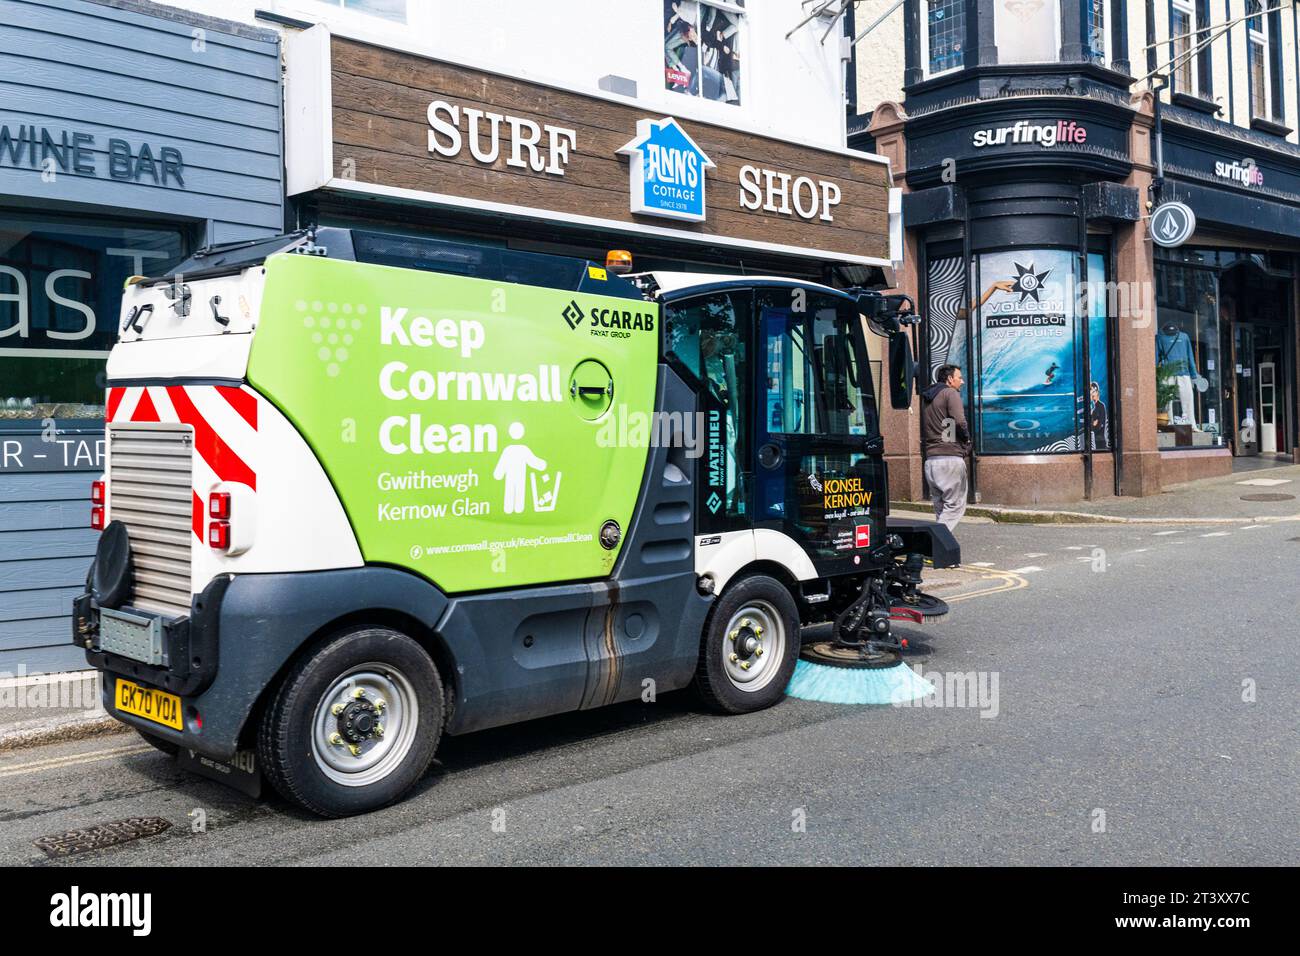 Una macchina per la pulizia stradale Scarab viene guidata lungo una strada nel centro di Newquay, in Cornovaglia, nel Regno Unito. Foto Stock